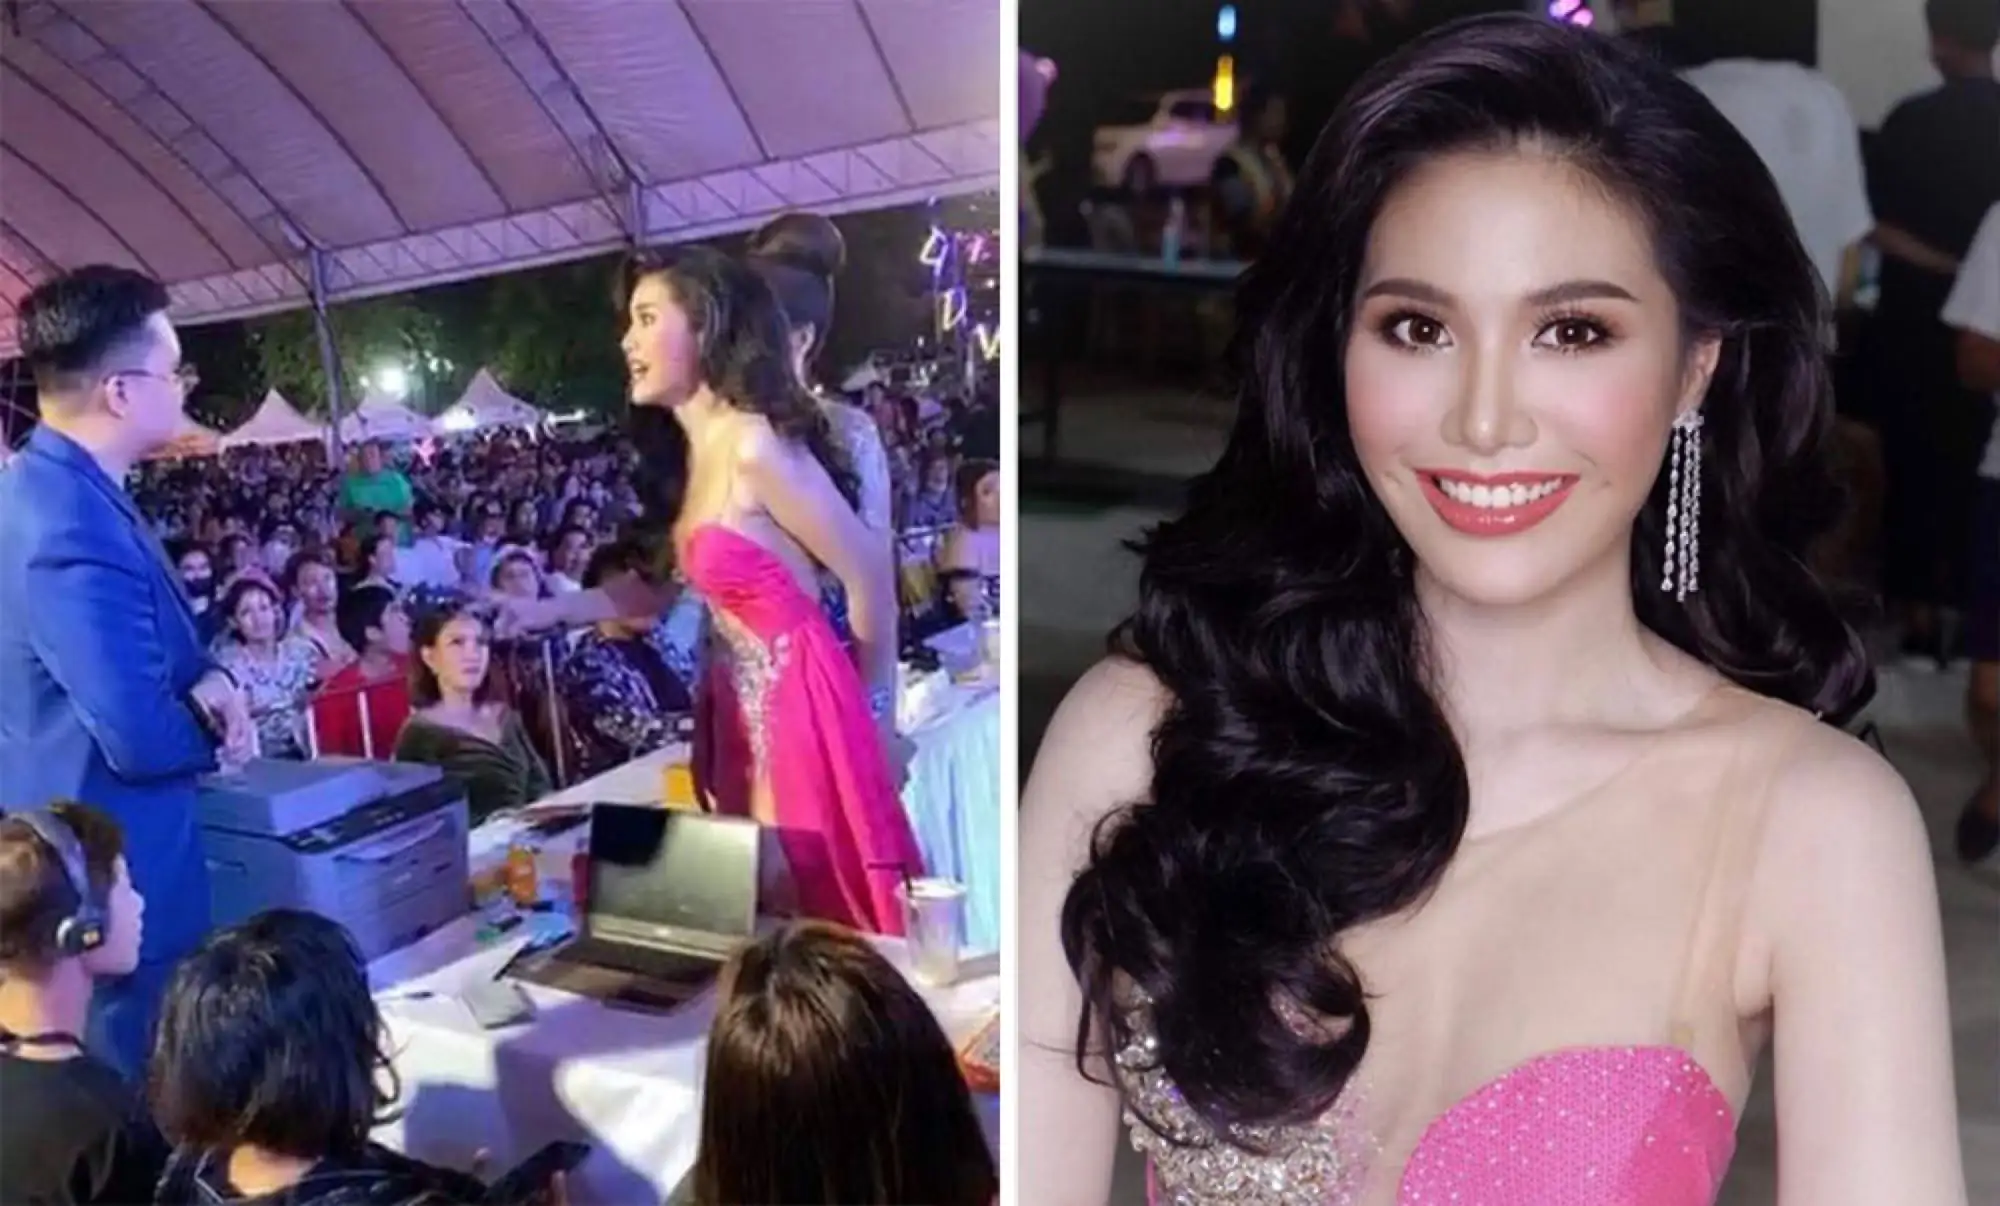 一名參賽者Ornapan Na Chiang Mai在2020宋卡小姐選美比賽現場衝向舞臺大聲指控比賽不公，質疑比賽有黑箱作業、冠軍內定之嫌疑，要求評審給個交代。（來源：翻攝自臉書）